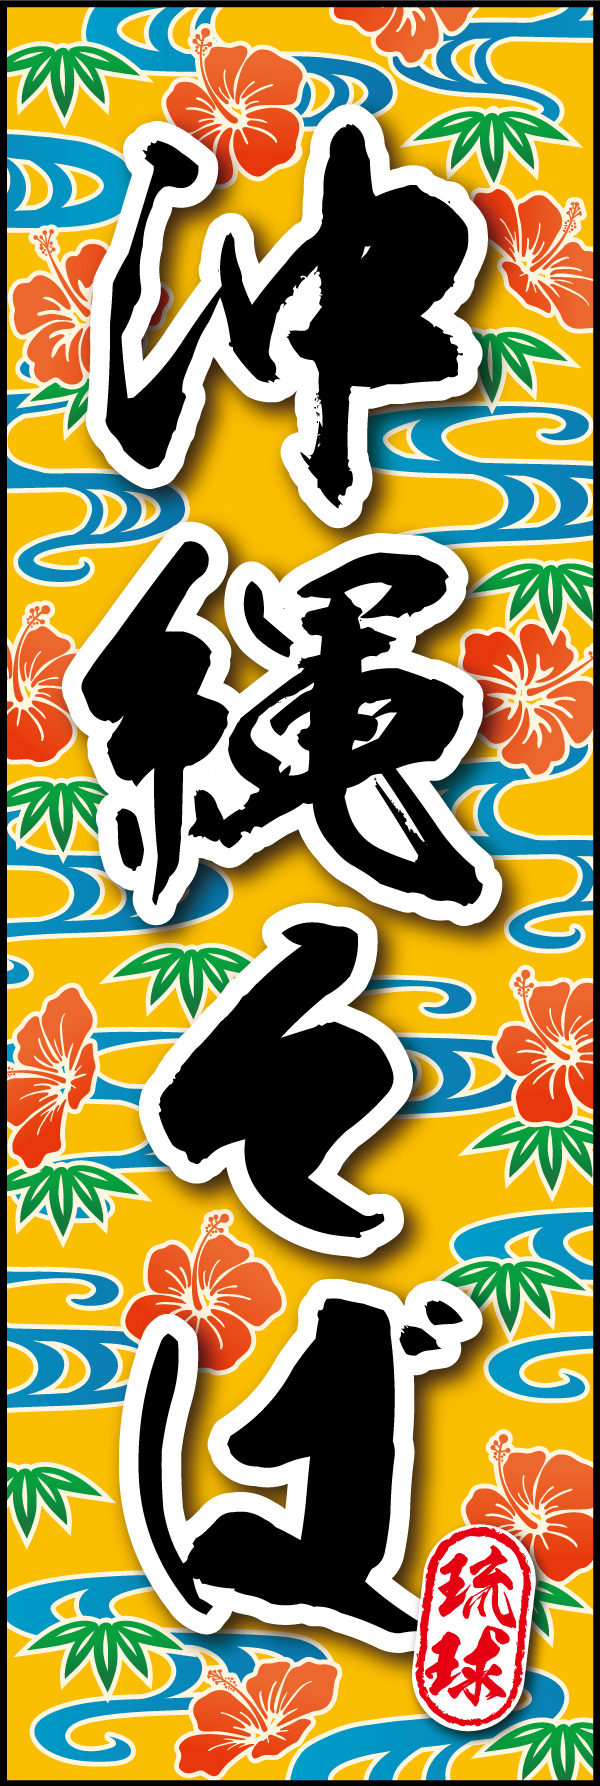 沖縄そば 06 「沖縄そば」の幟です。琉球らしい柄で沖縄そばの雰囲気を全面にだしました。(Y.M)